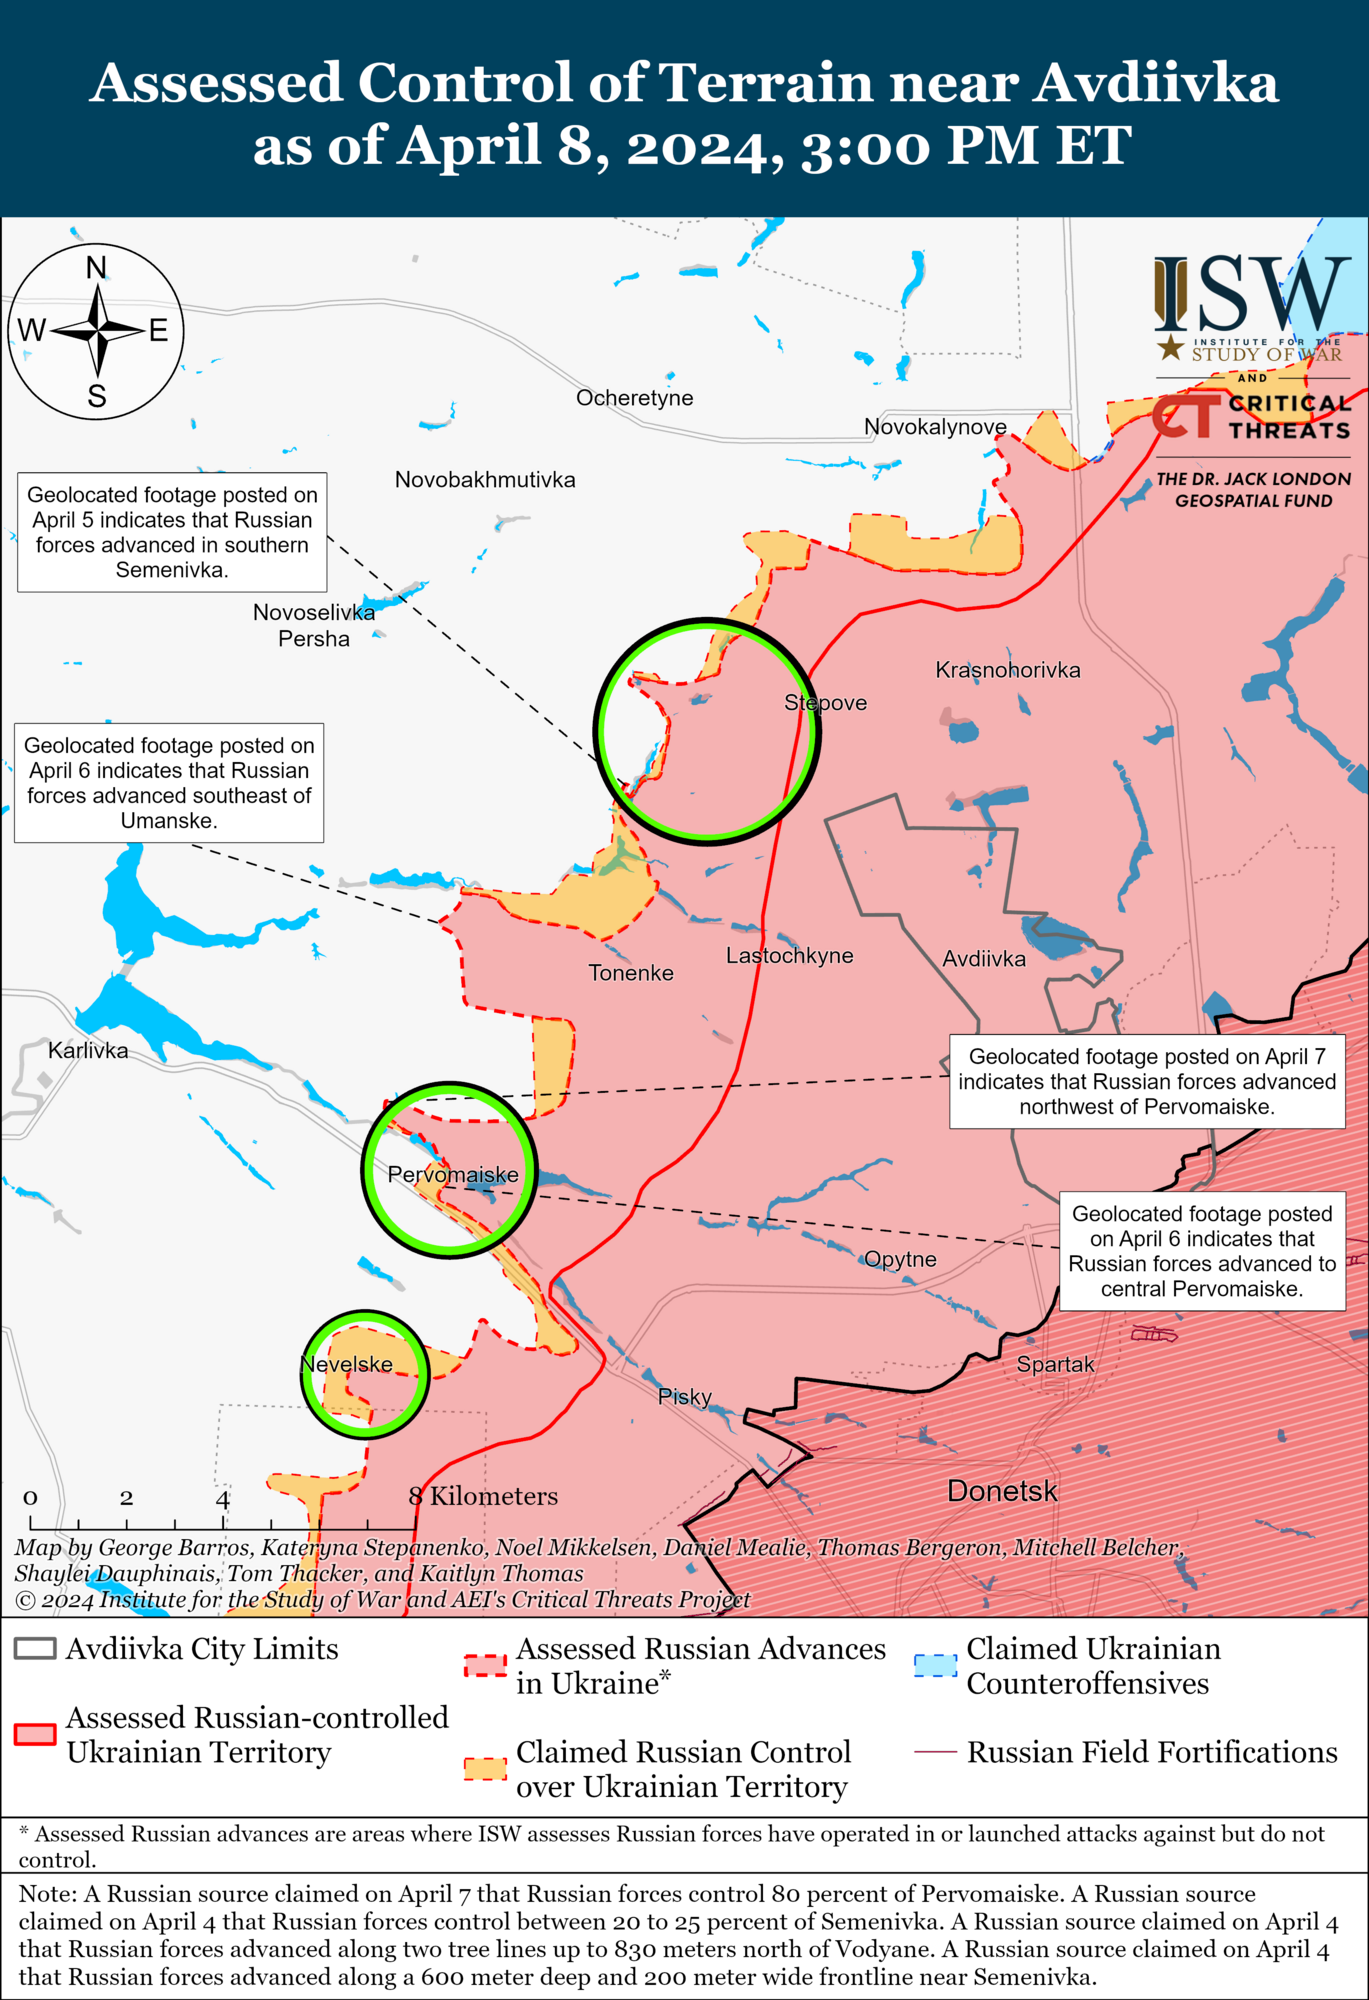 Війська РФ захопили позиції на північ від Авдіївки, але ЗСУ контратакували ворога: в ISW оцінили перебіг боїв. Карта queiqxeihuidrdant